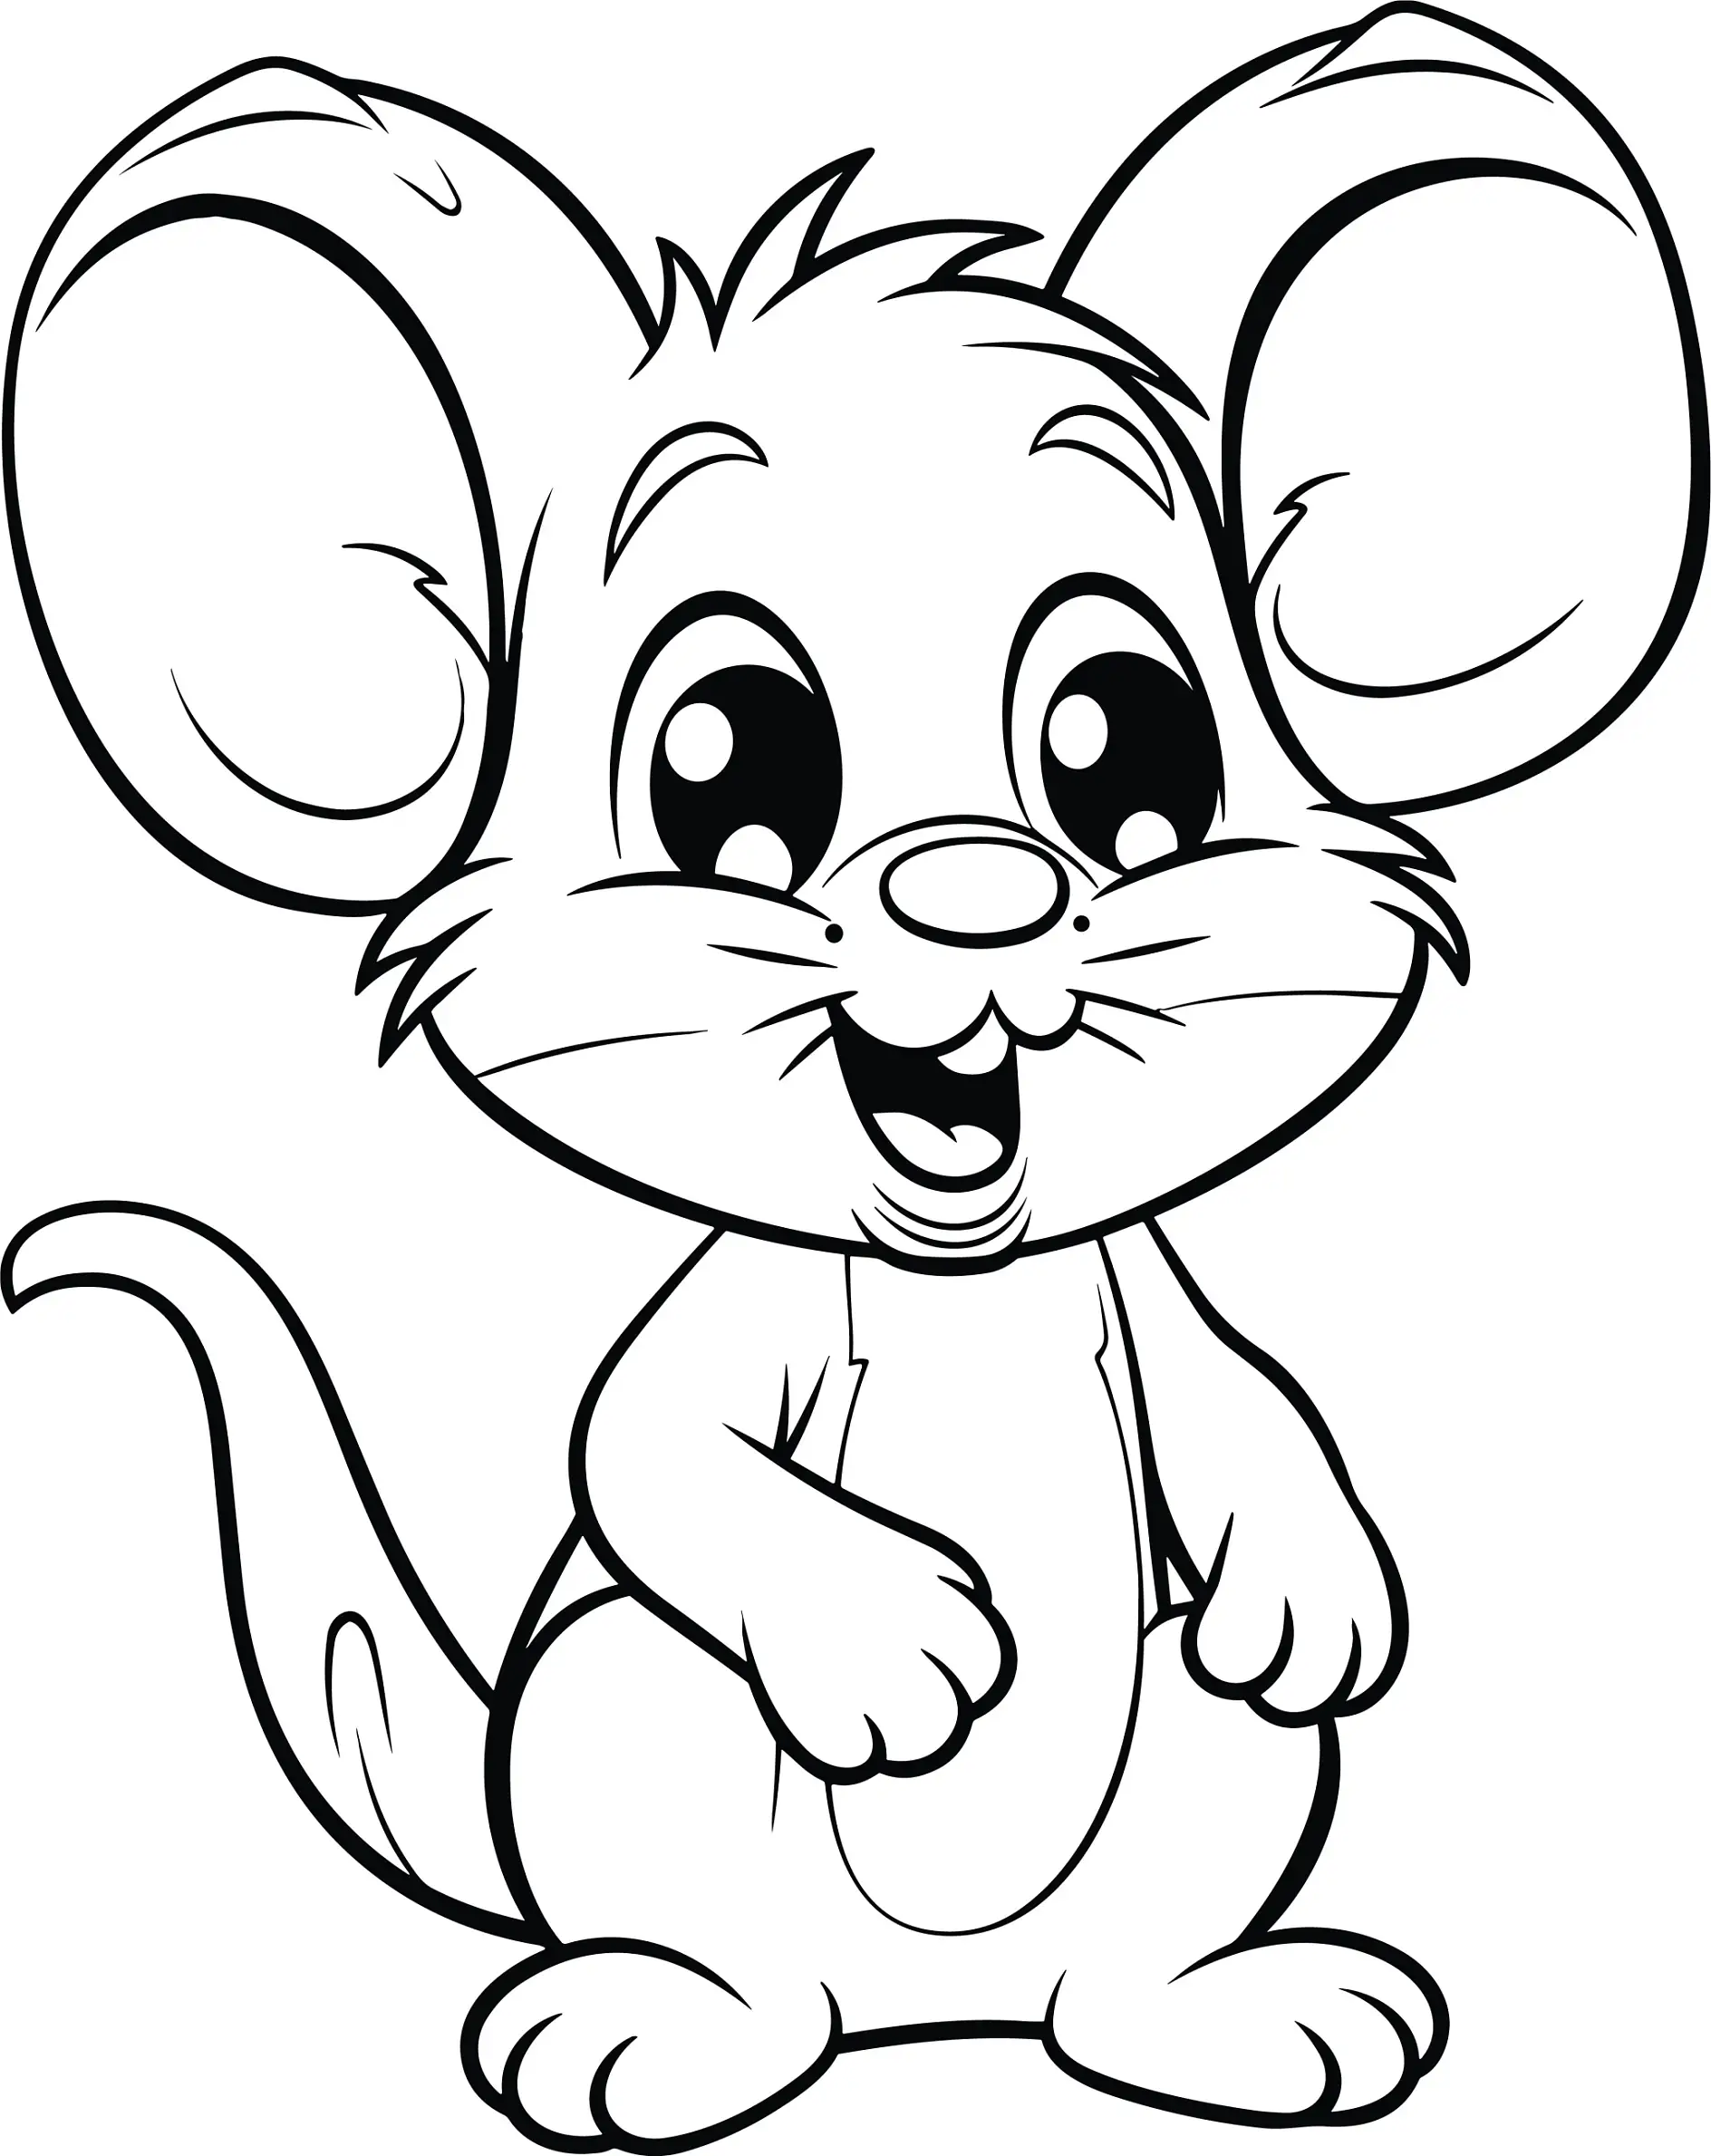 Ausmalbild Maus aufrecht stehend mit lächelndem Gesicht